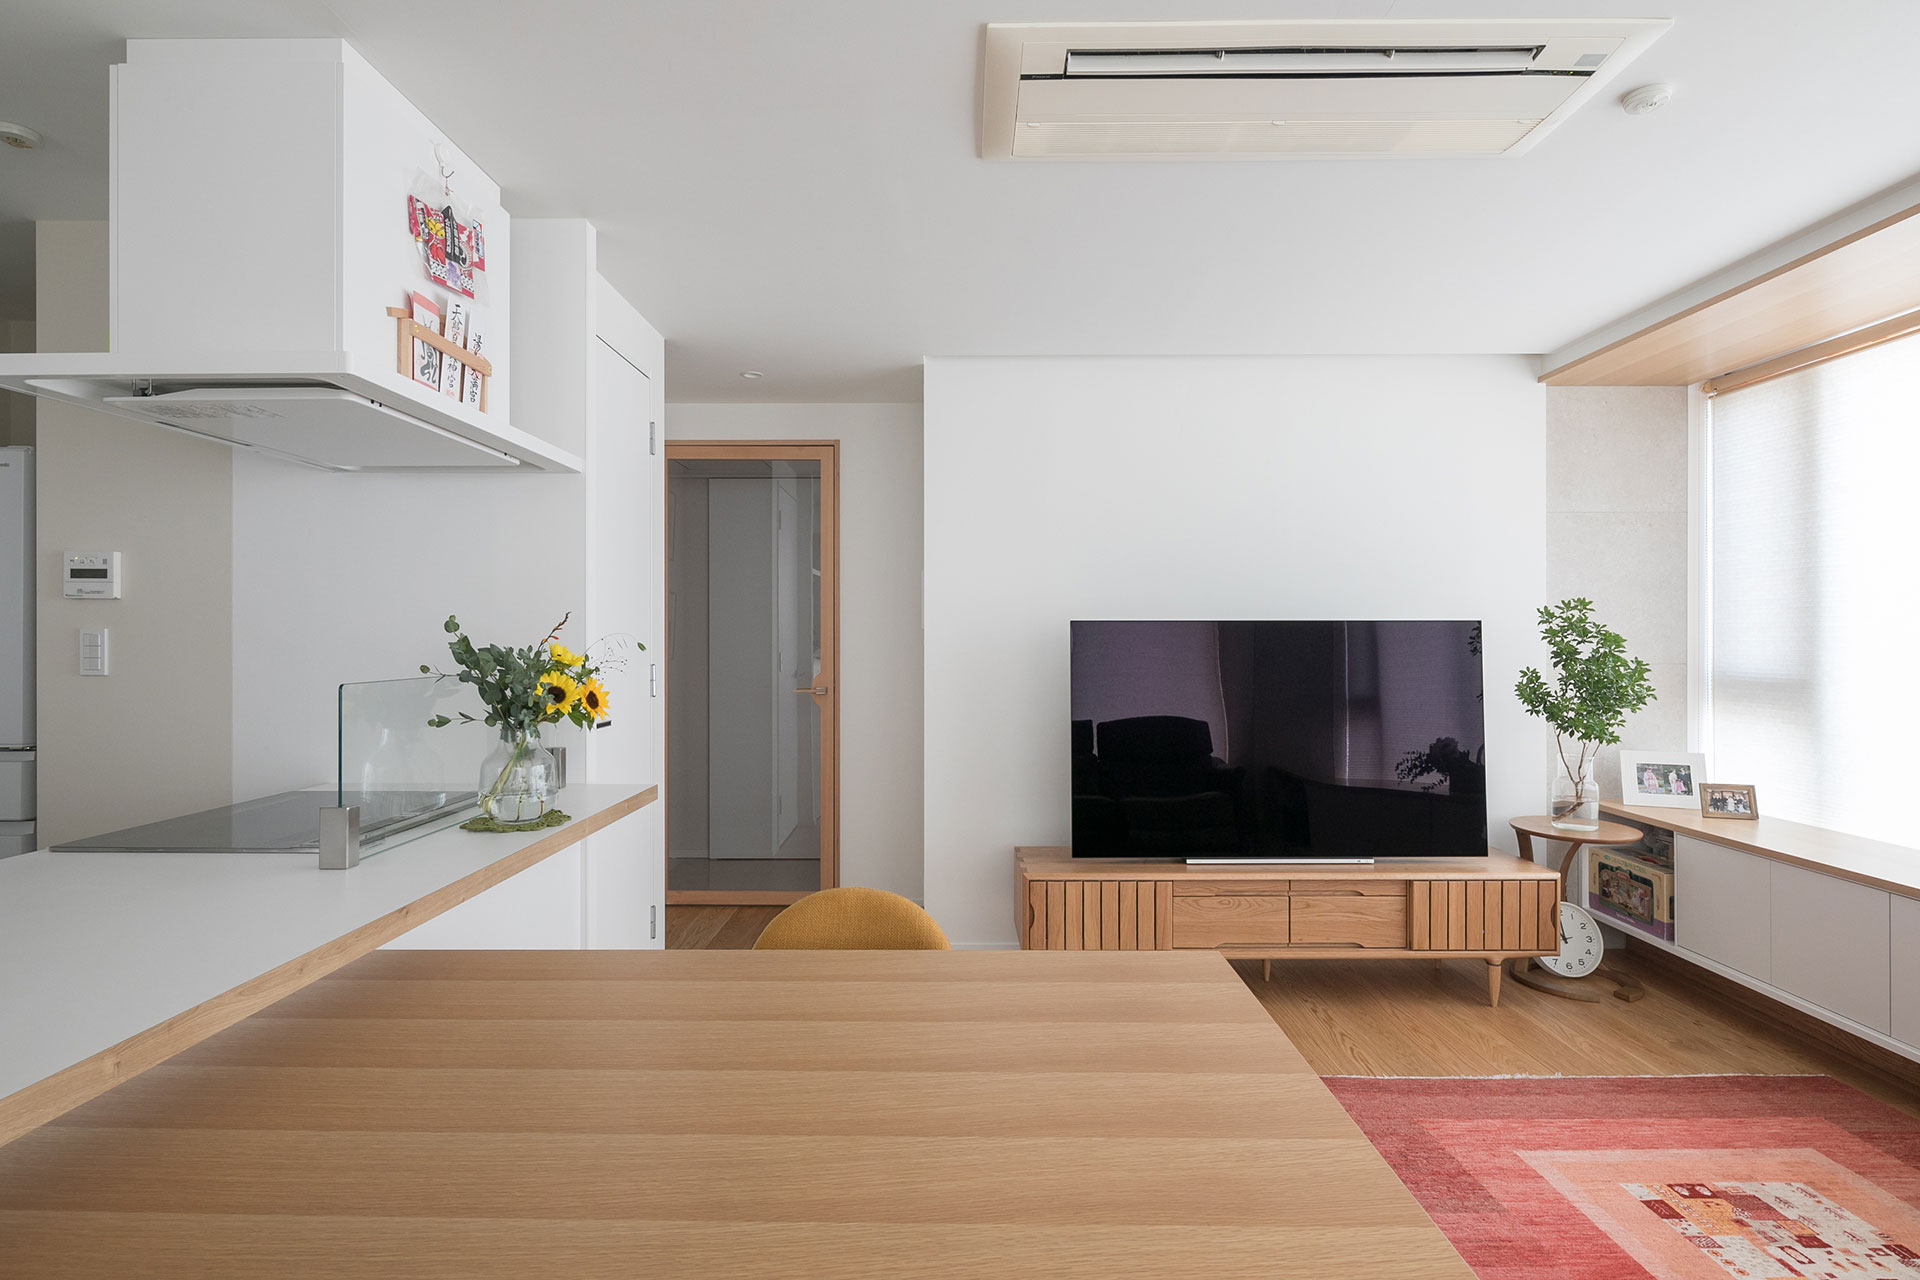 ダイニングテーブルやテレビボードなど温かみのある木製の家具が空間にマッチする。